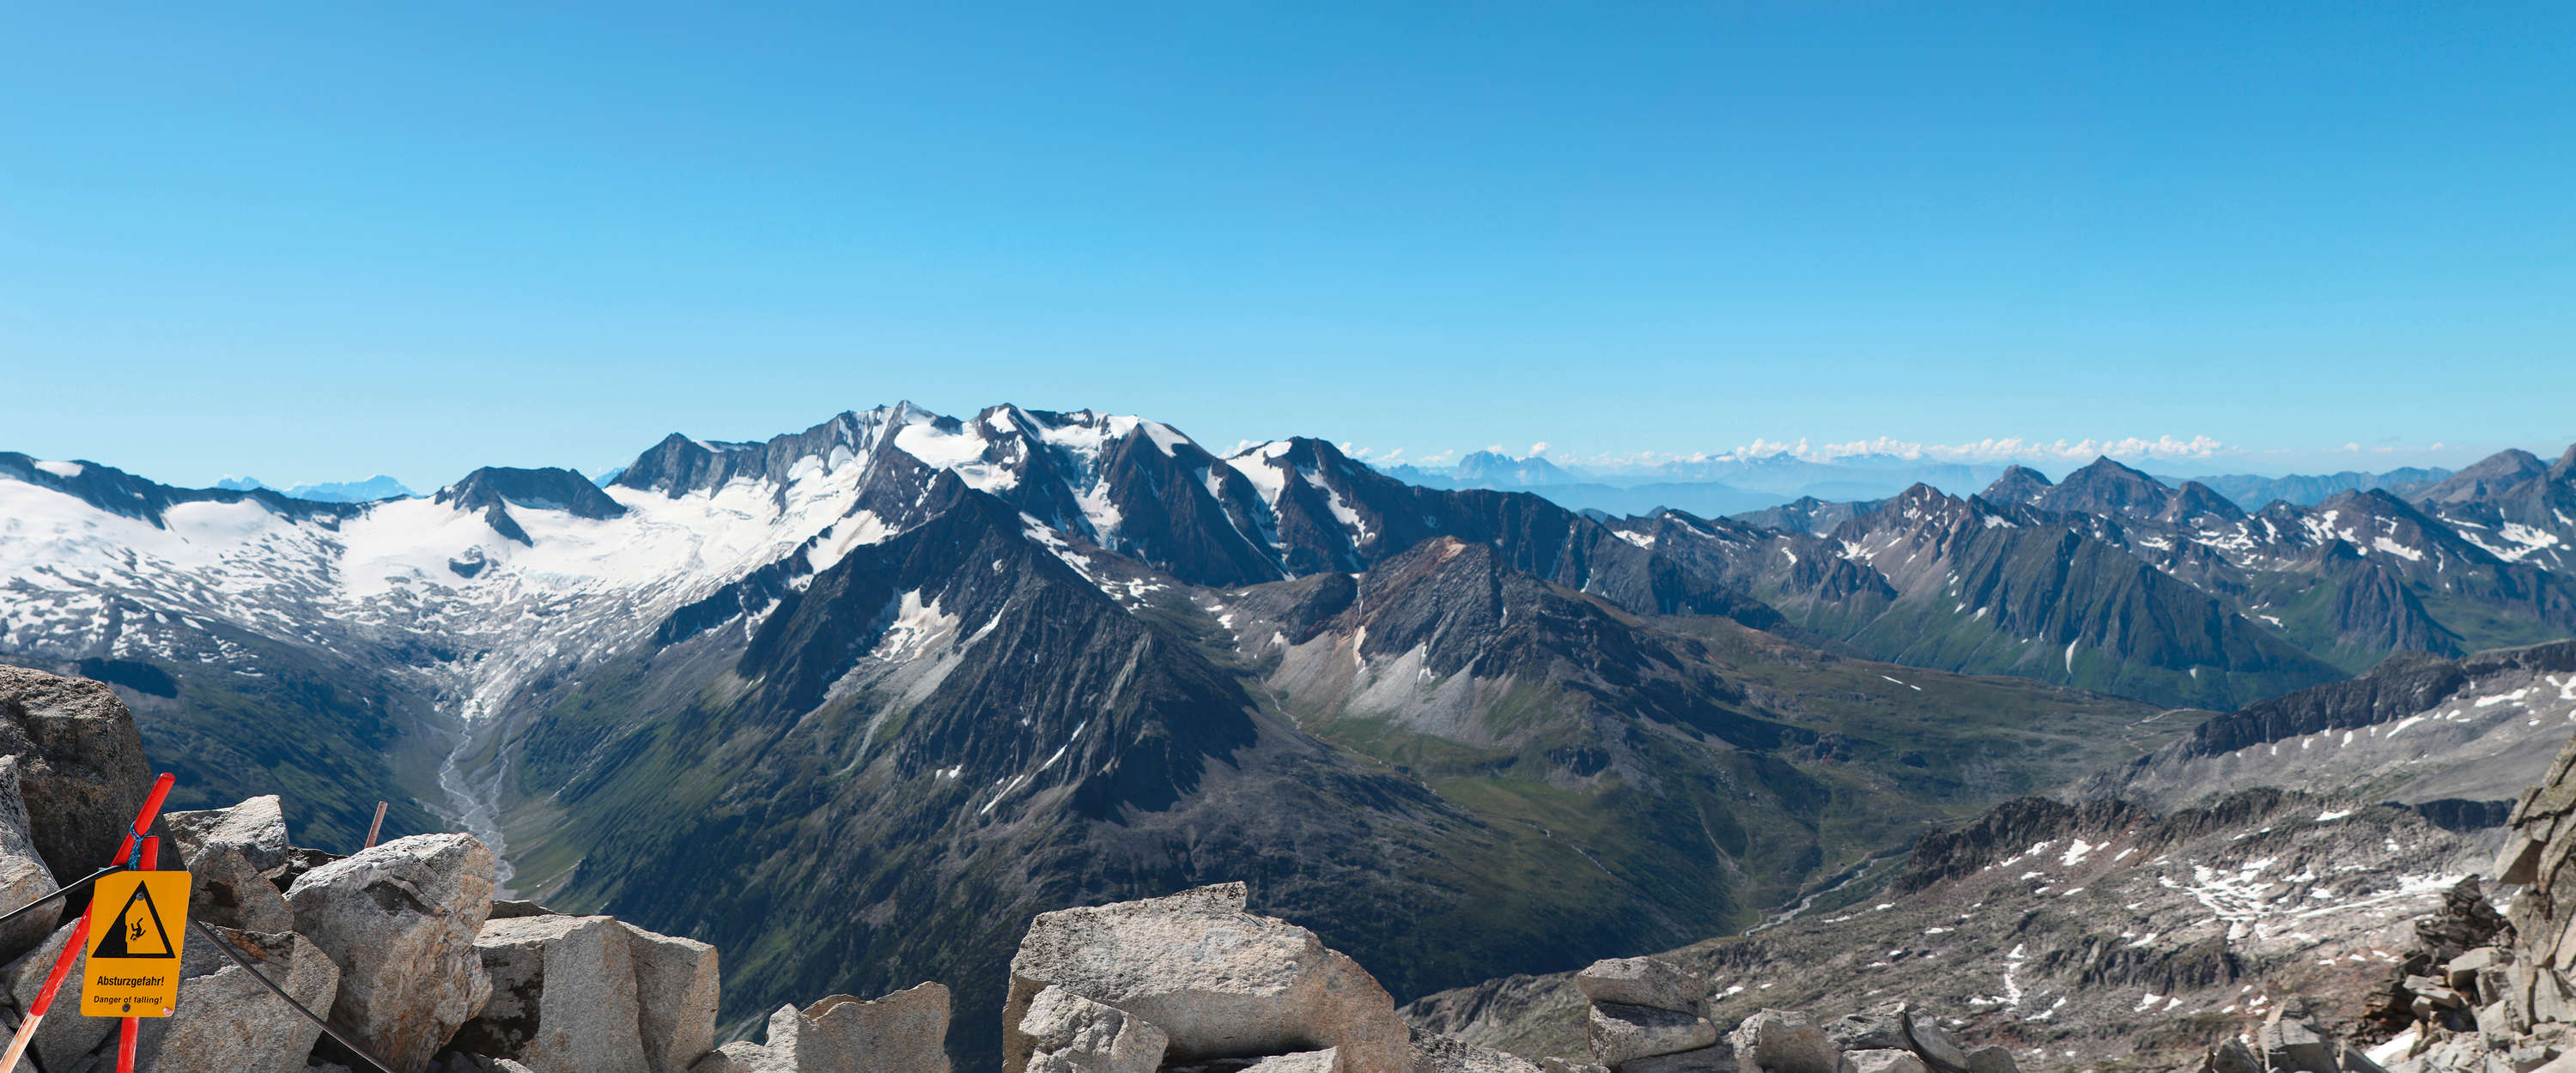             Muurschildering met weids uitzicht op het alpenpanorama
        